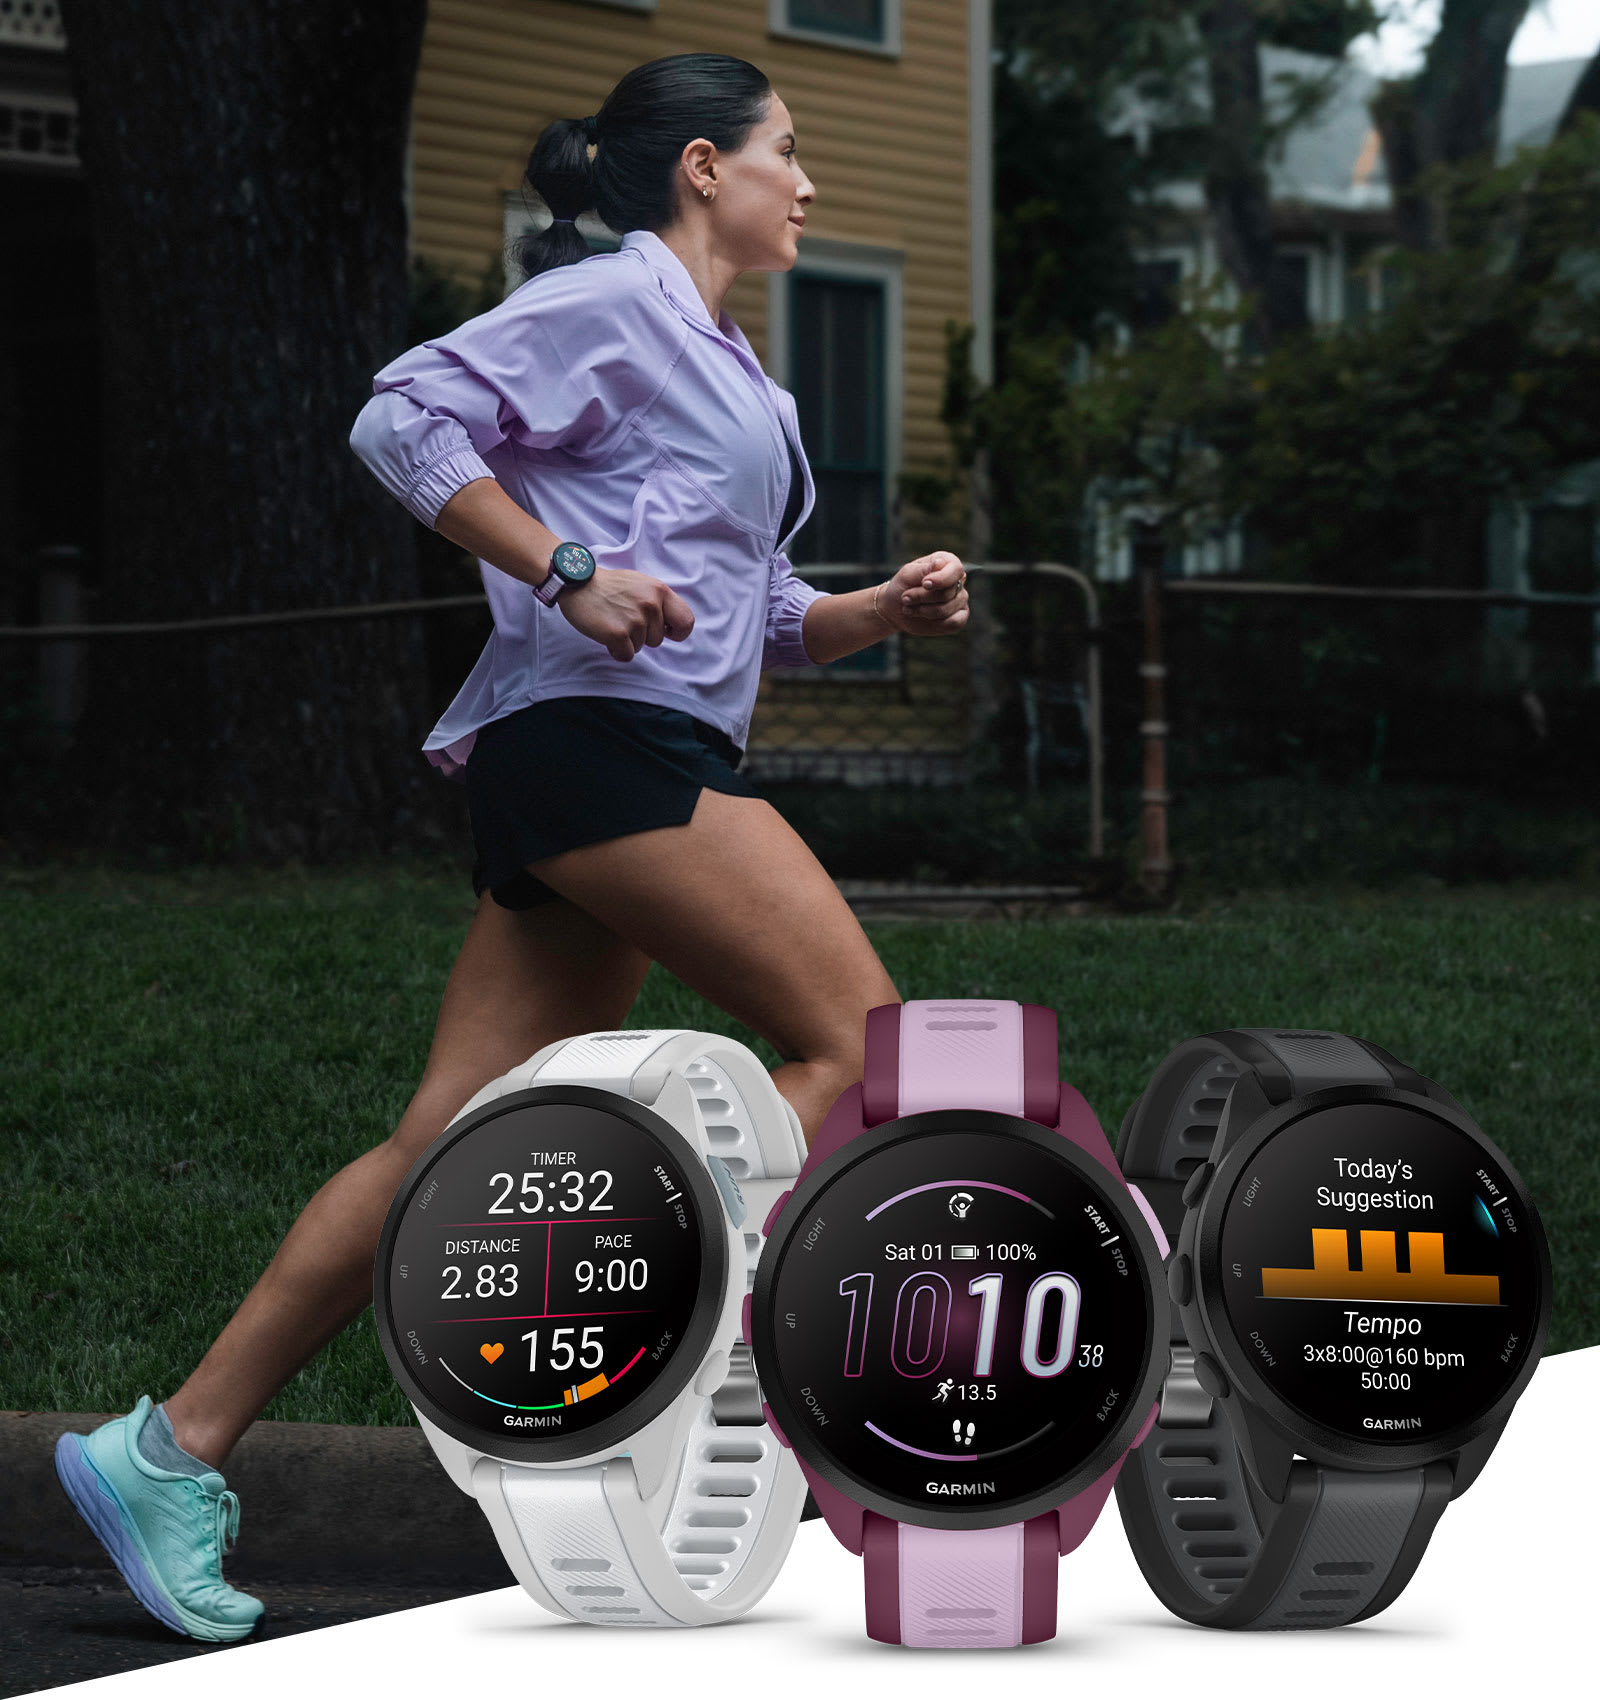 CEMACO - ¡Ven por tu reloj Garmin! Empieza el año midiendo tu actividad  física con estos relojes y sus increíbles funciones que seguro te ayudaran  a llevar un mejor control de tu